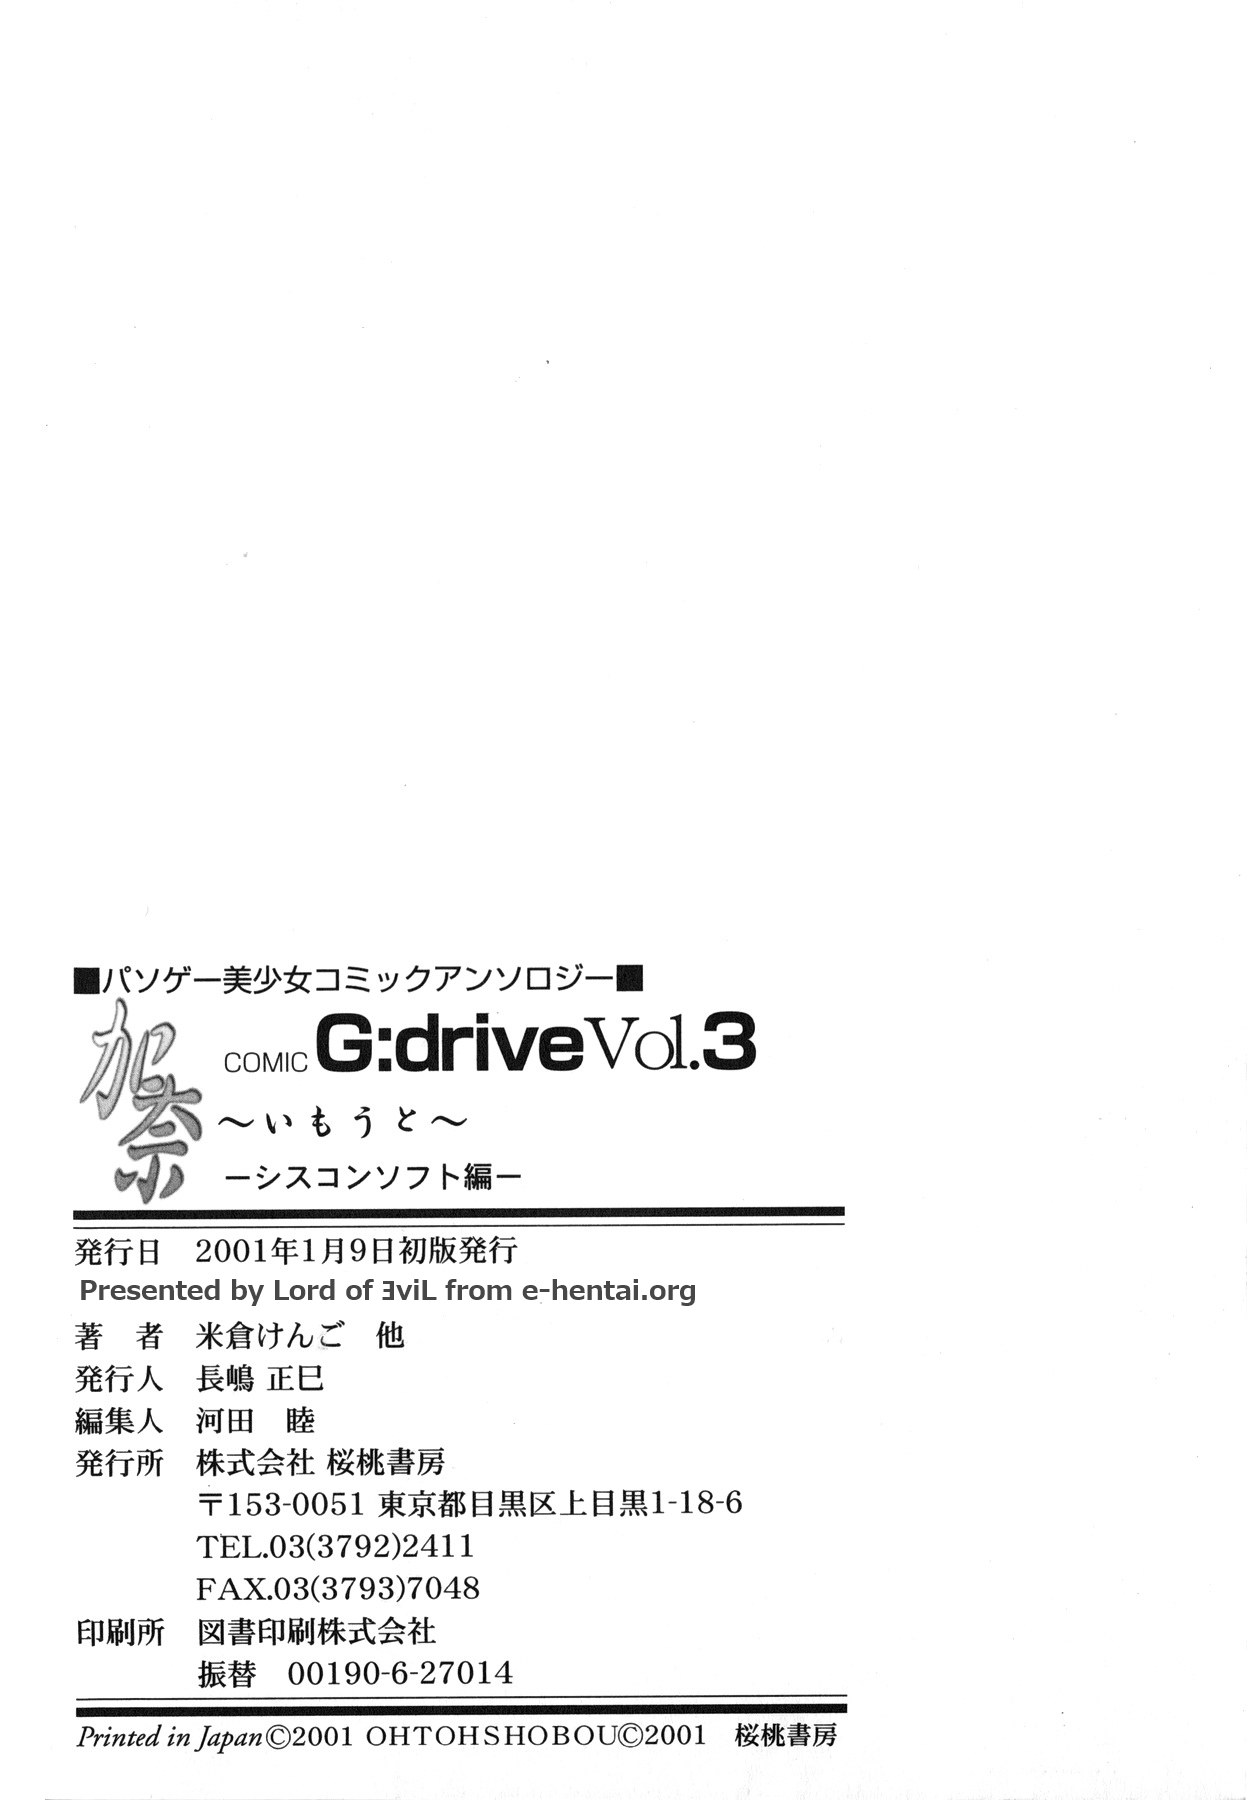 [アンソロジー] Comic G：drive Vol.3 シスコン編スペシャル 「加奈 ~いもうと~」